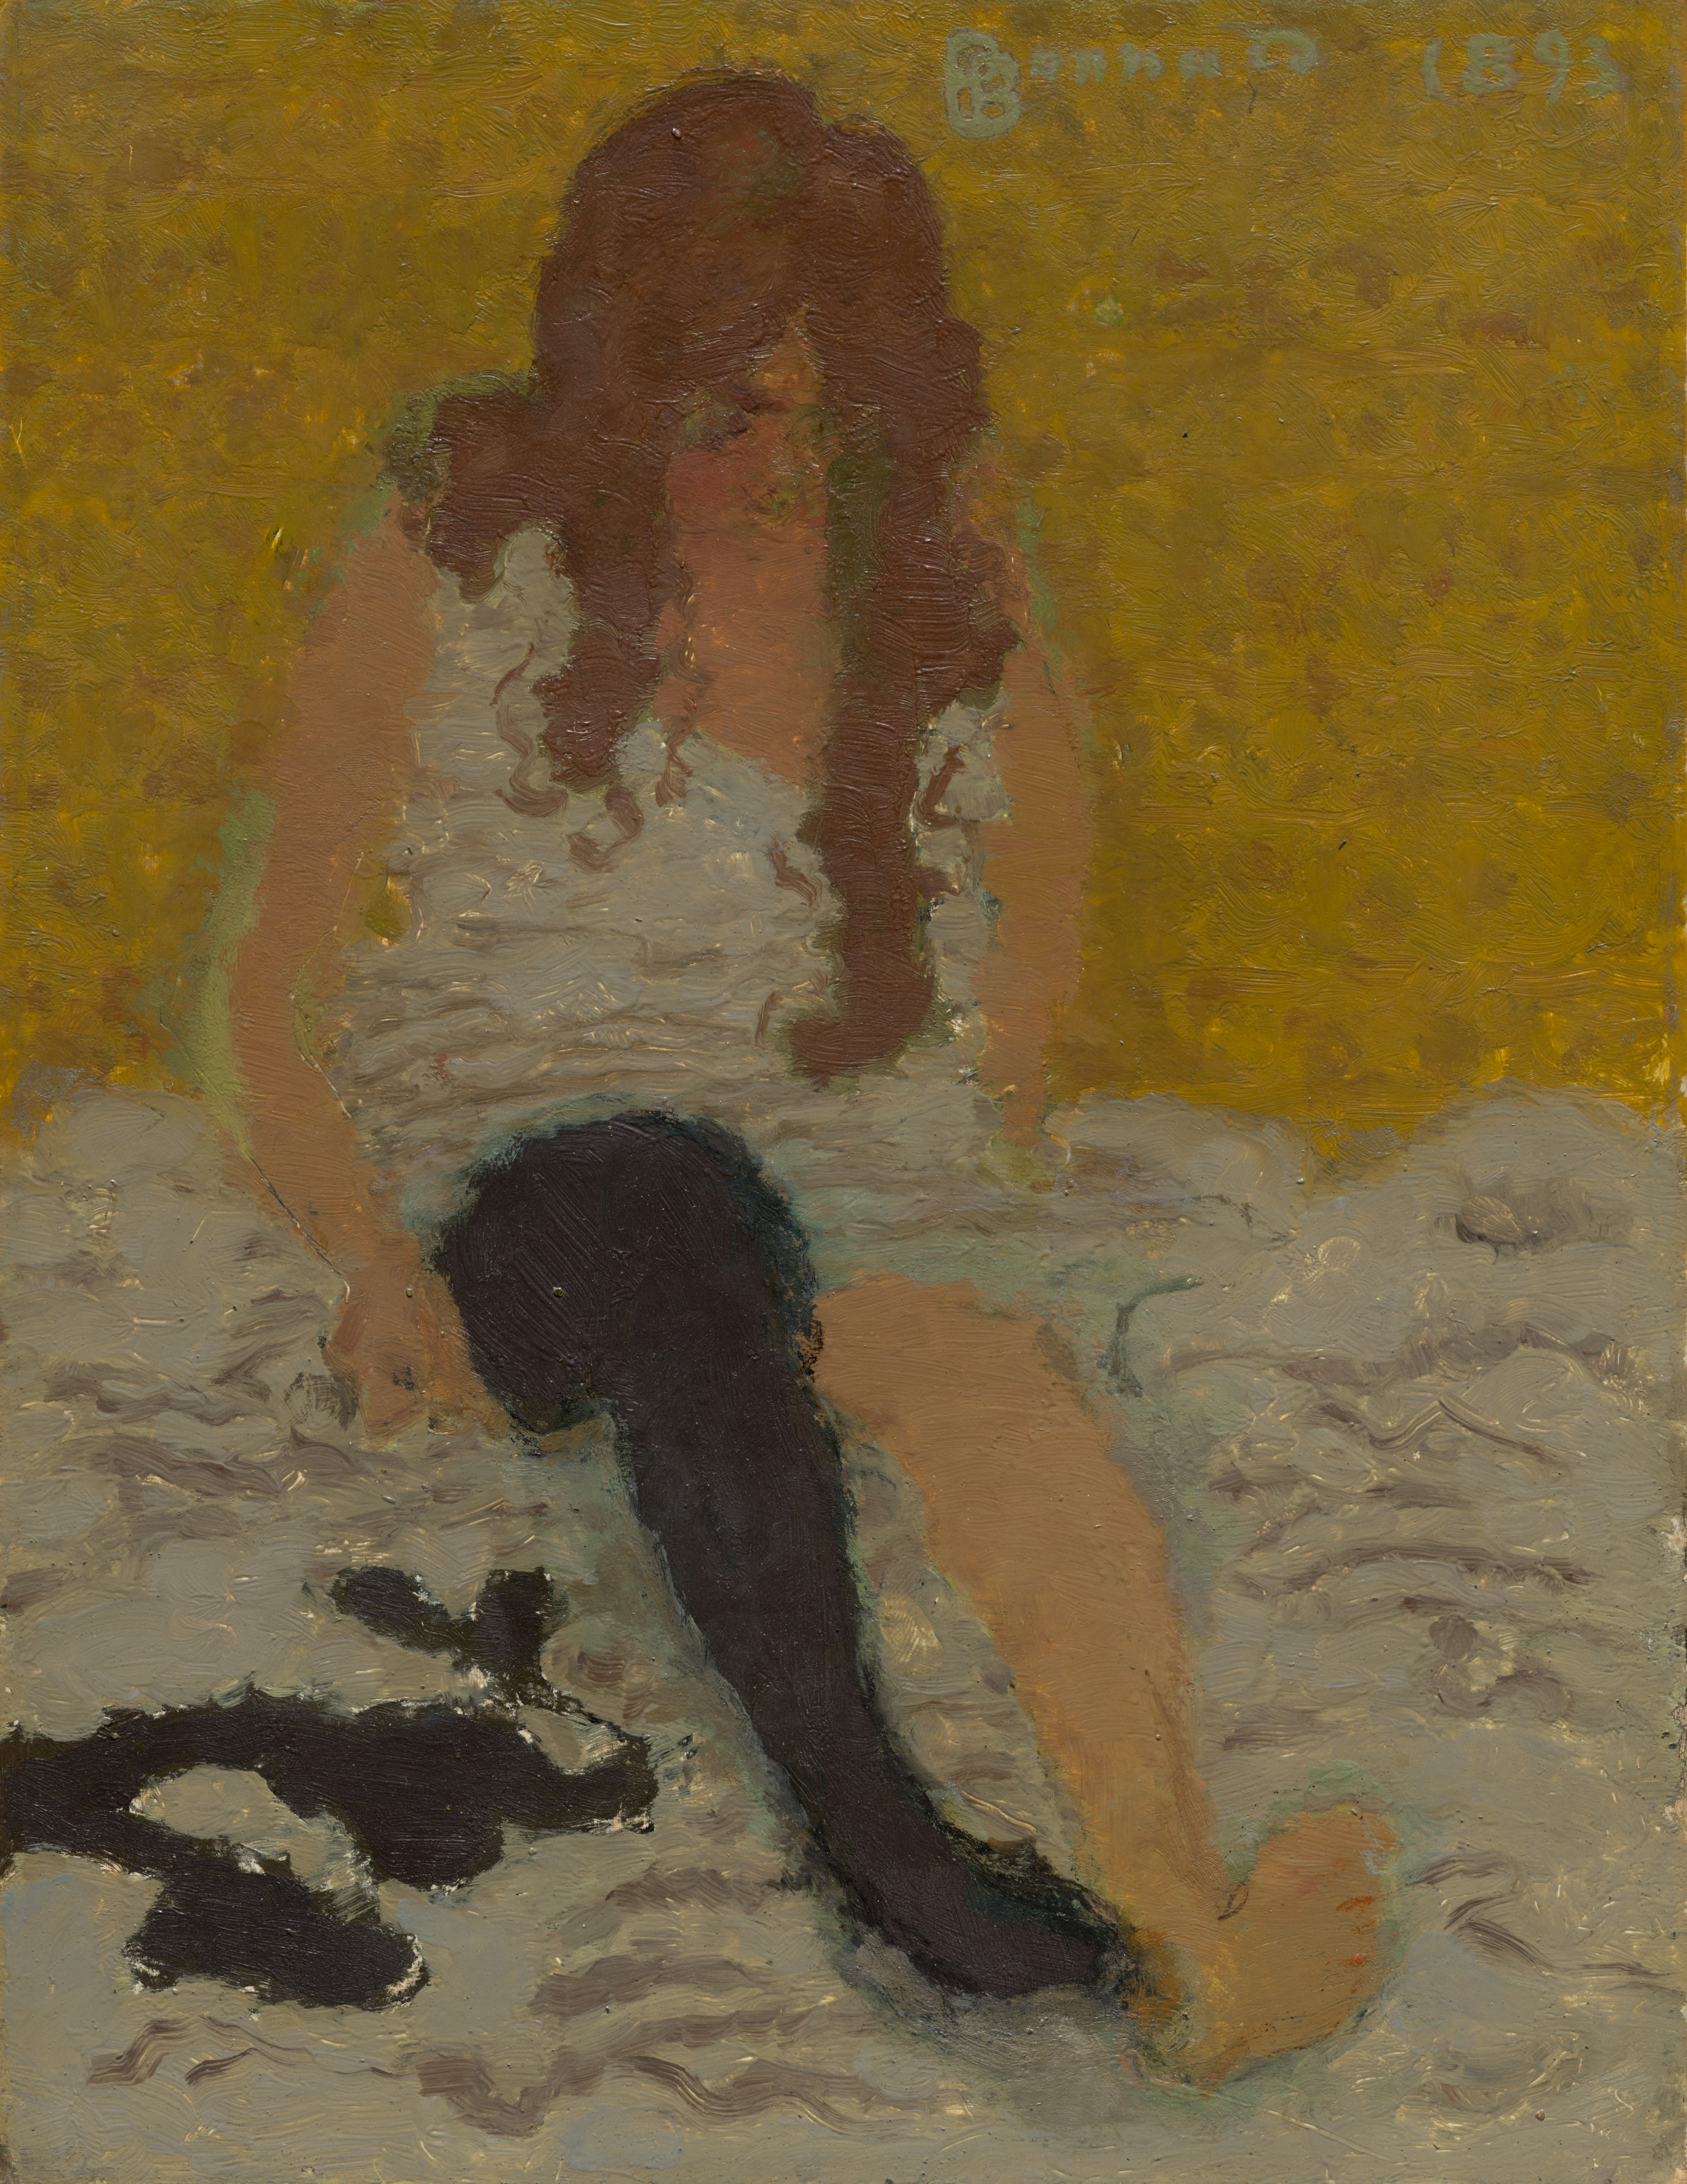 靴下をはく女性 by Pierre Bonnard - 1893年 - 35.2 x 27 cm 